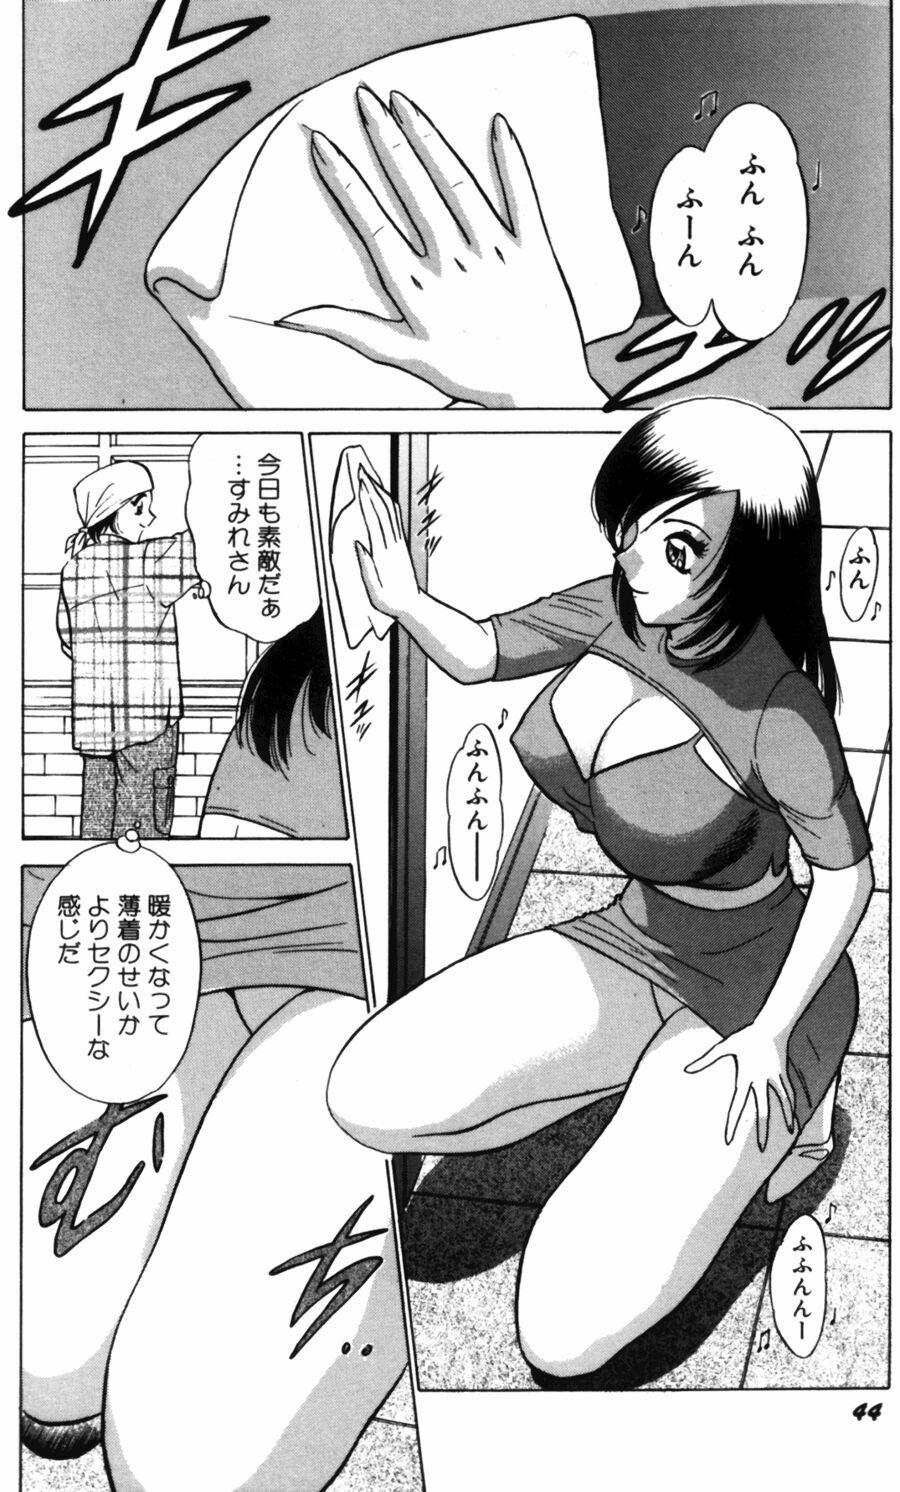 [Minami Tomoko, Kyon] Ai wa Kagi no Kazu dake... Part. 2 page 46 full